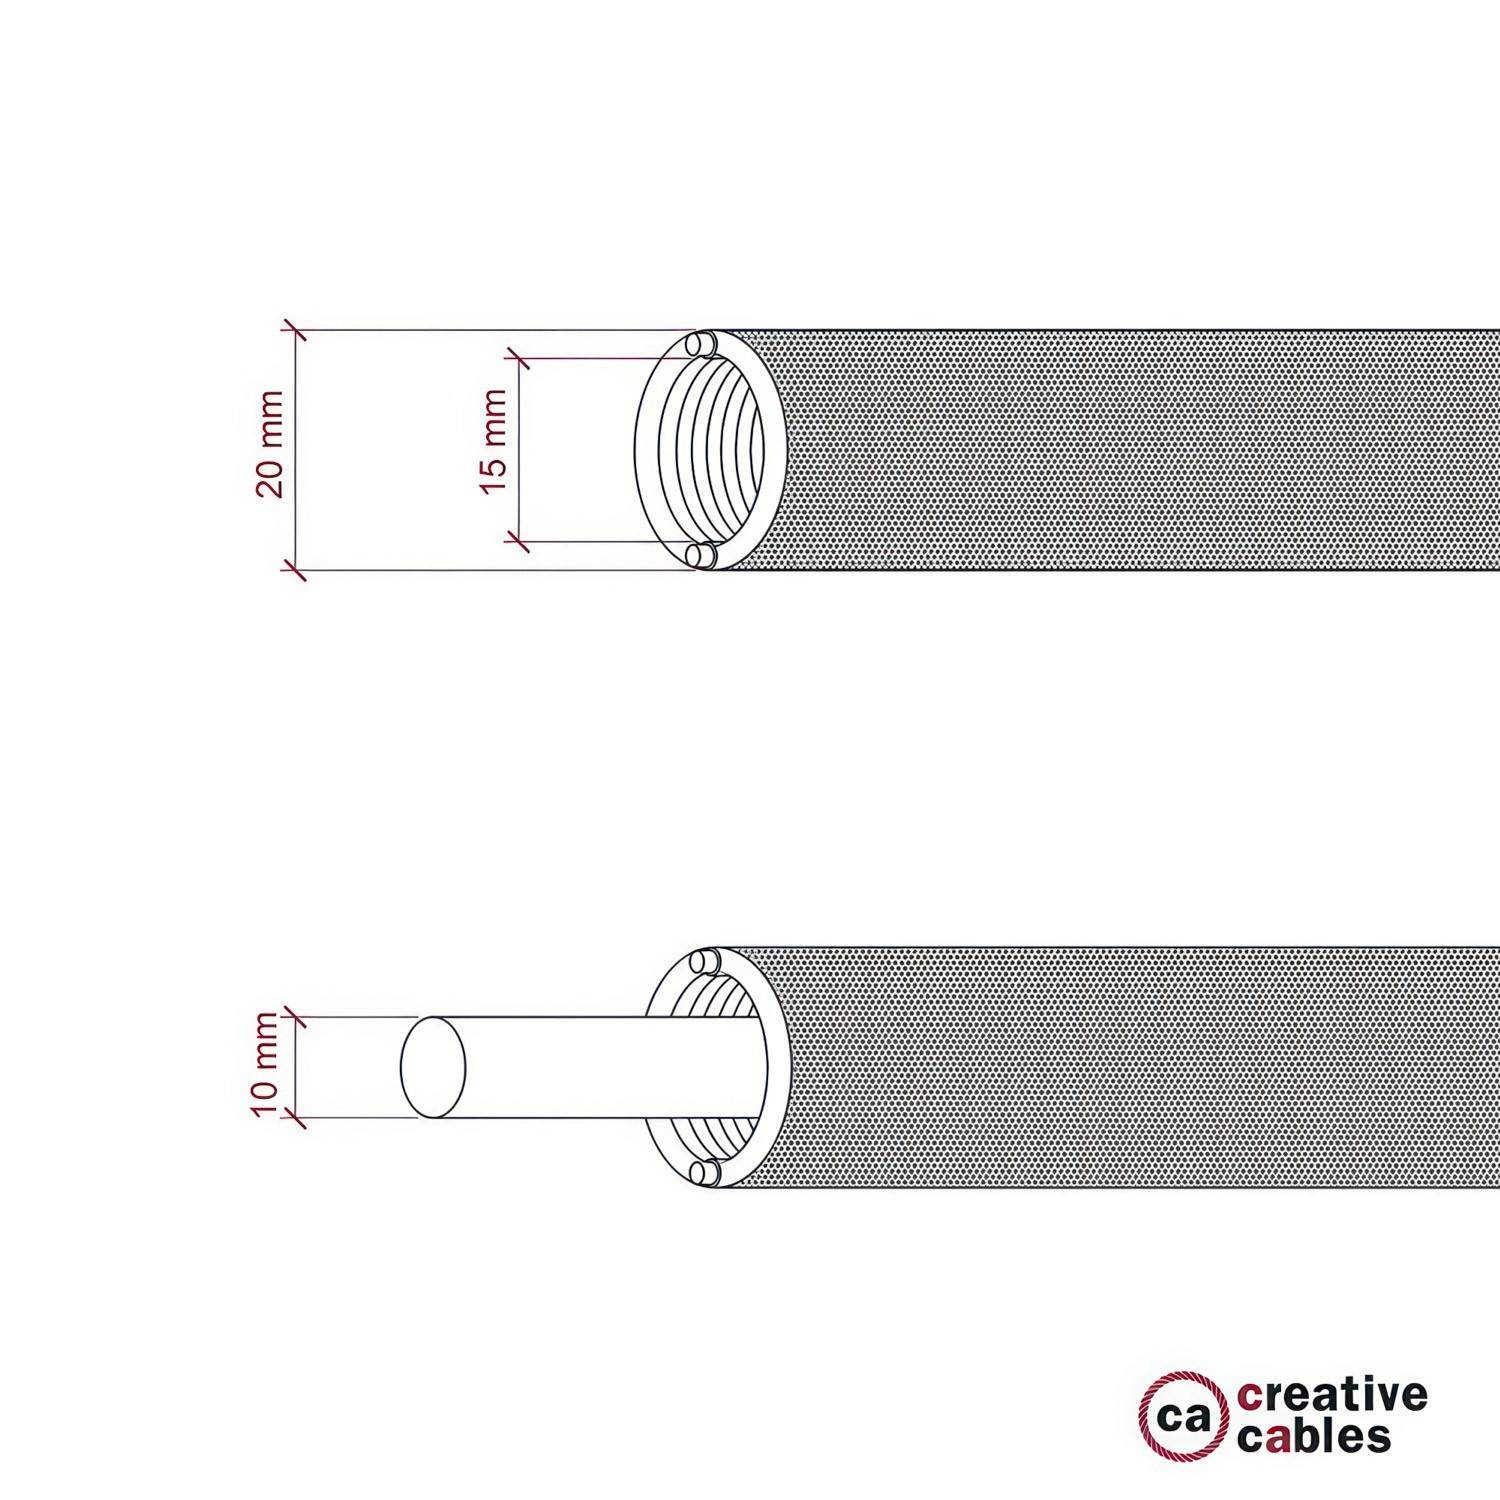 Elastyczne korytko kablowe Creative-Tube, w oplocie z juty RN06, średnica 20 mm